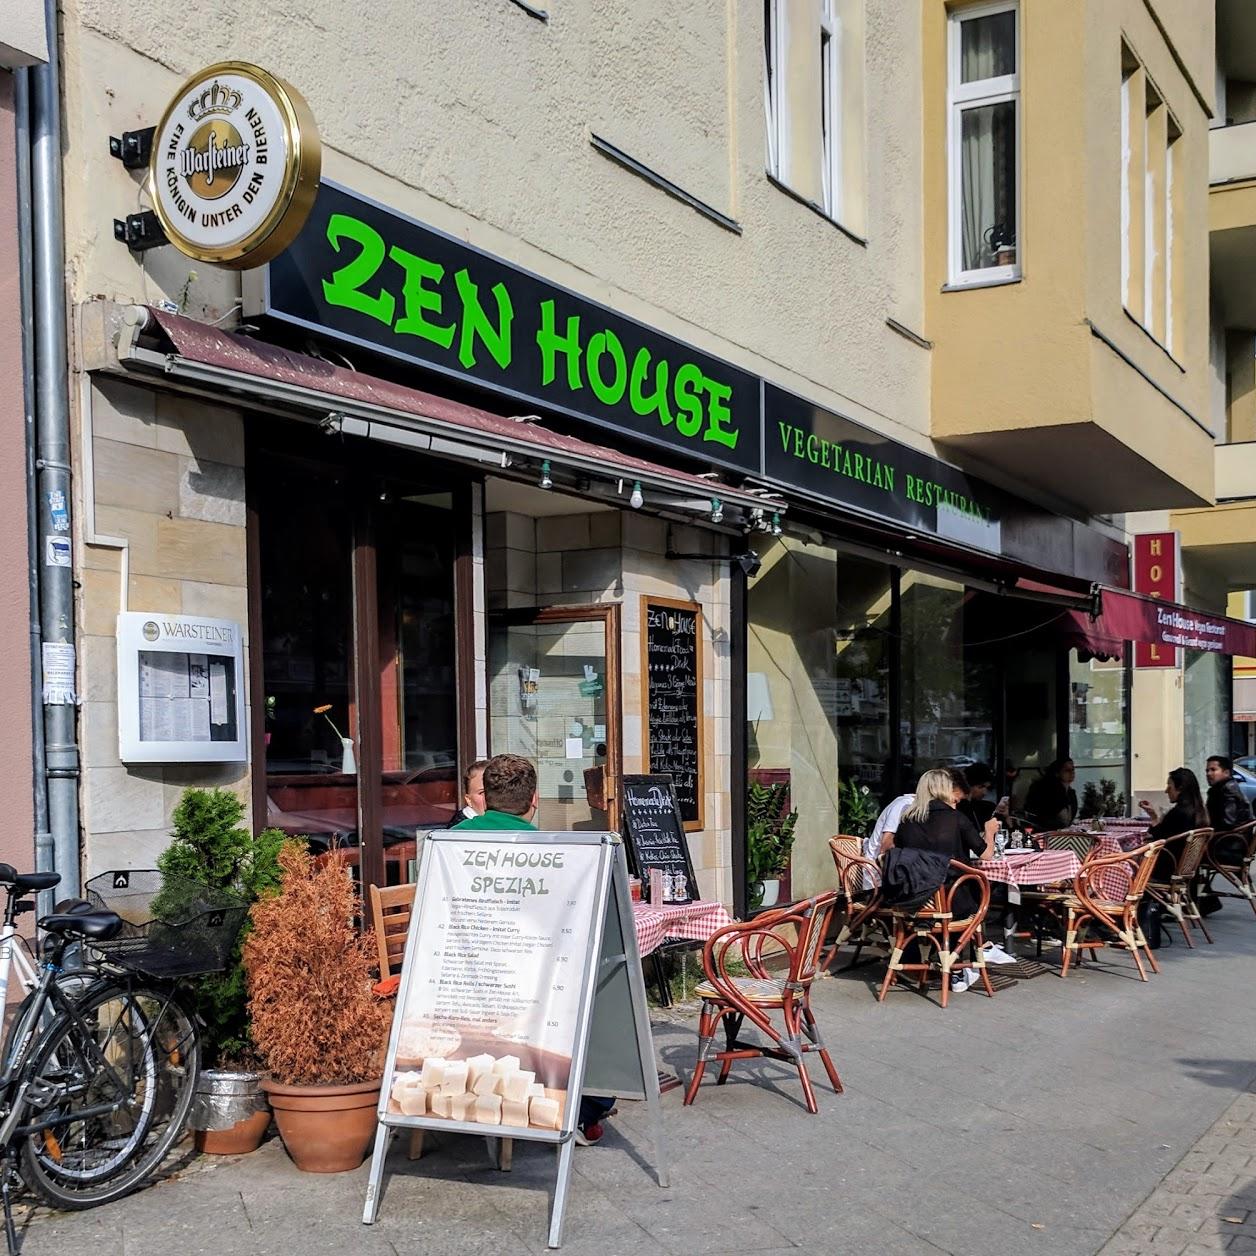 Restaurant "Zen House" in Berlin